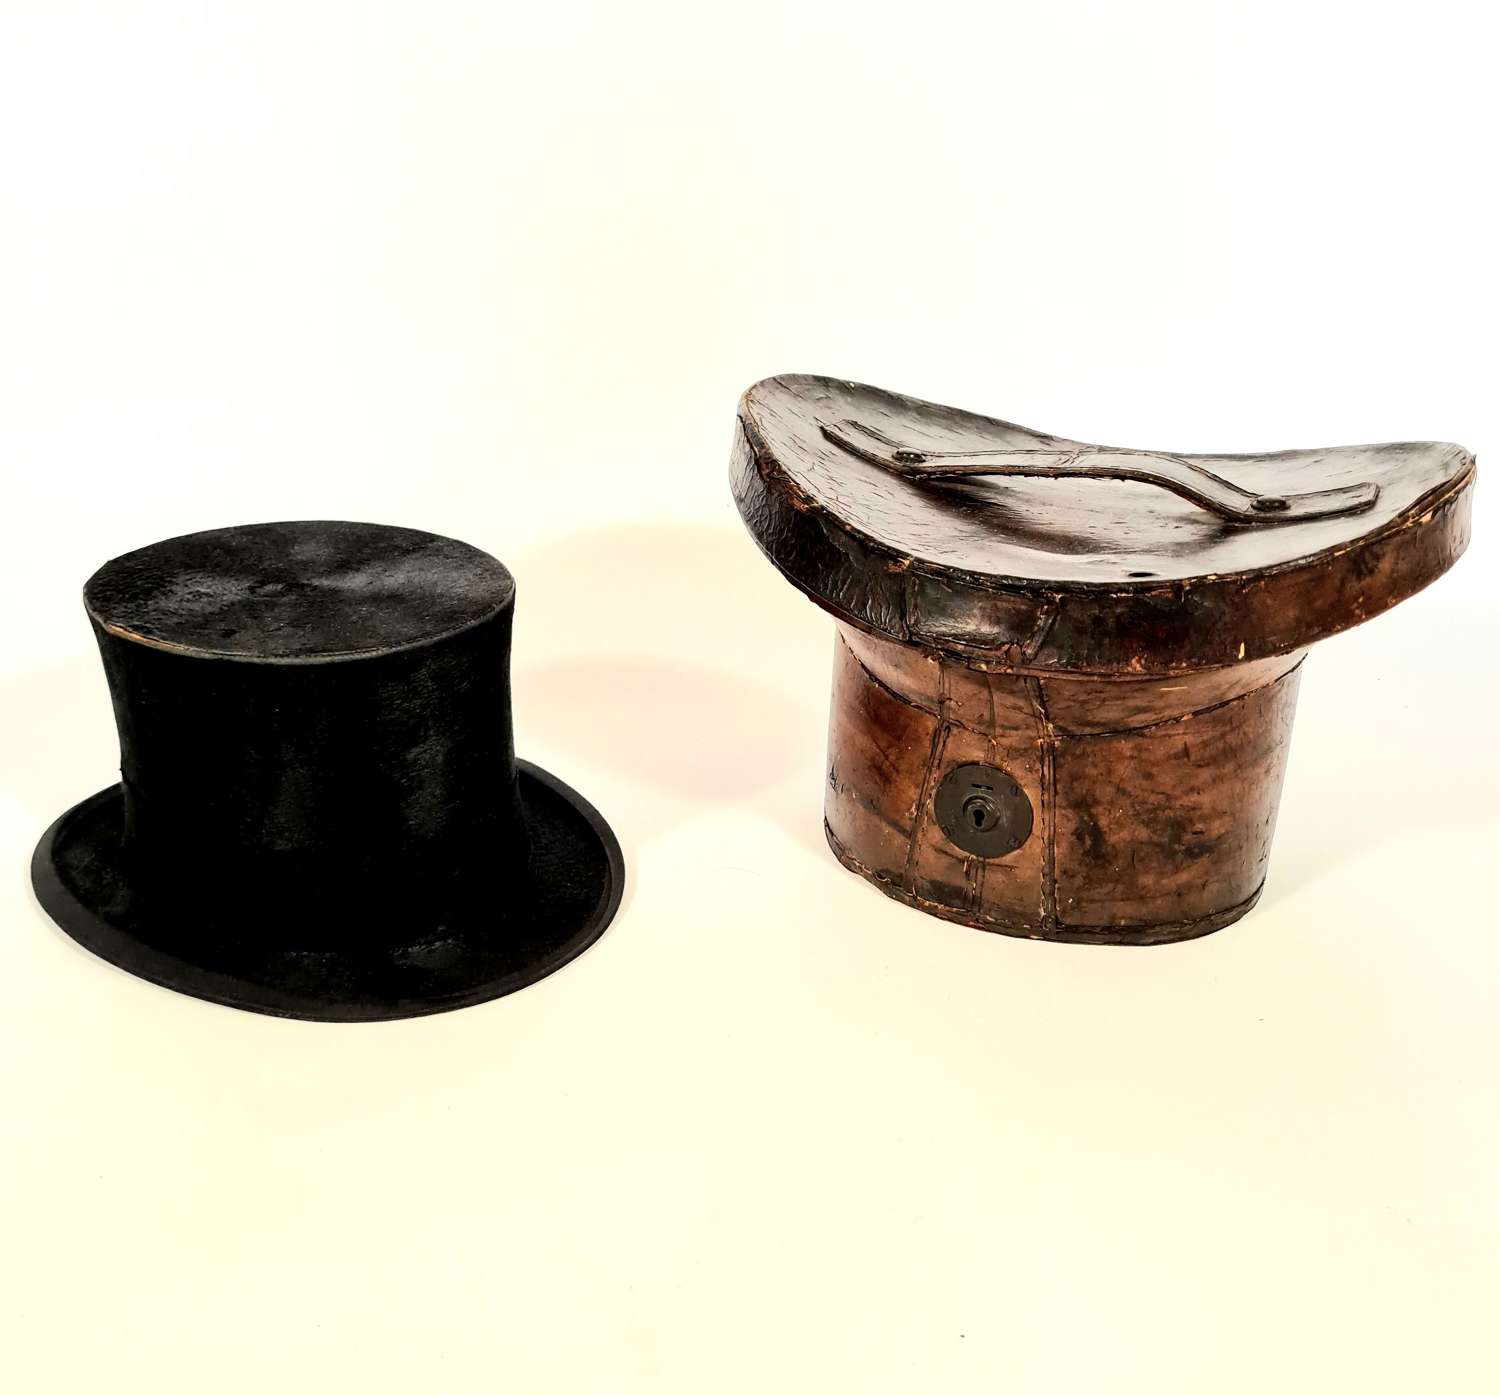 Antique Silk Top Hat